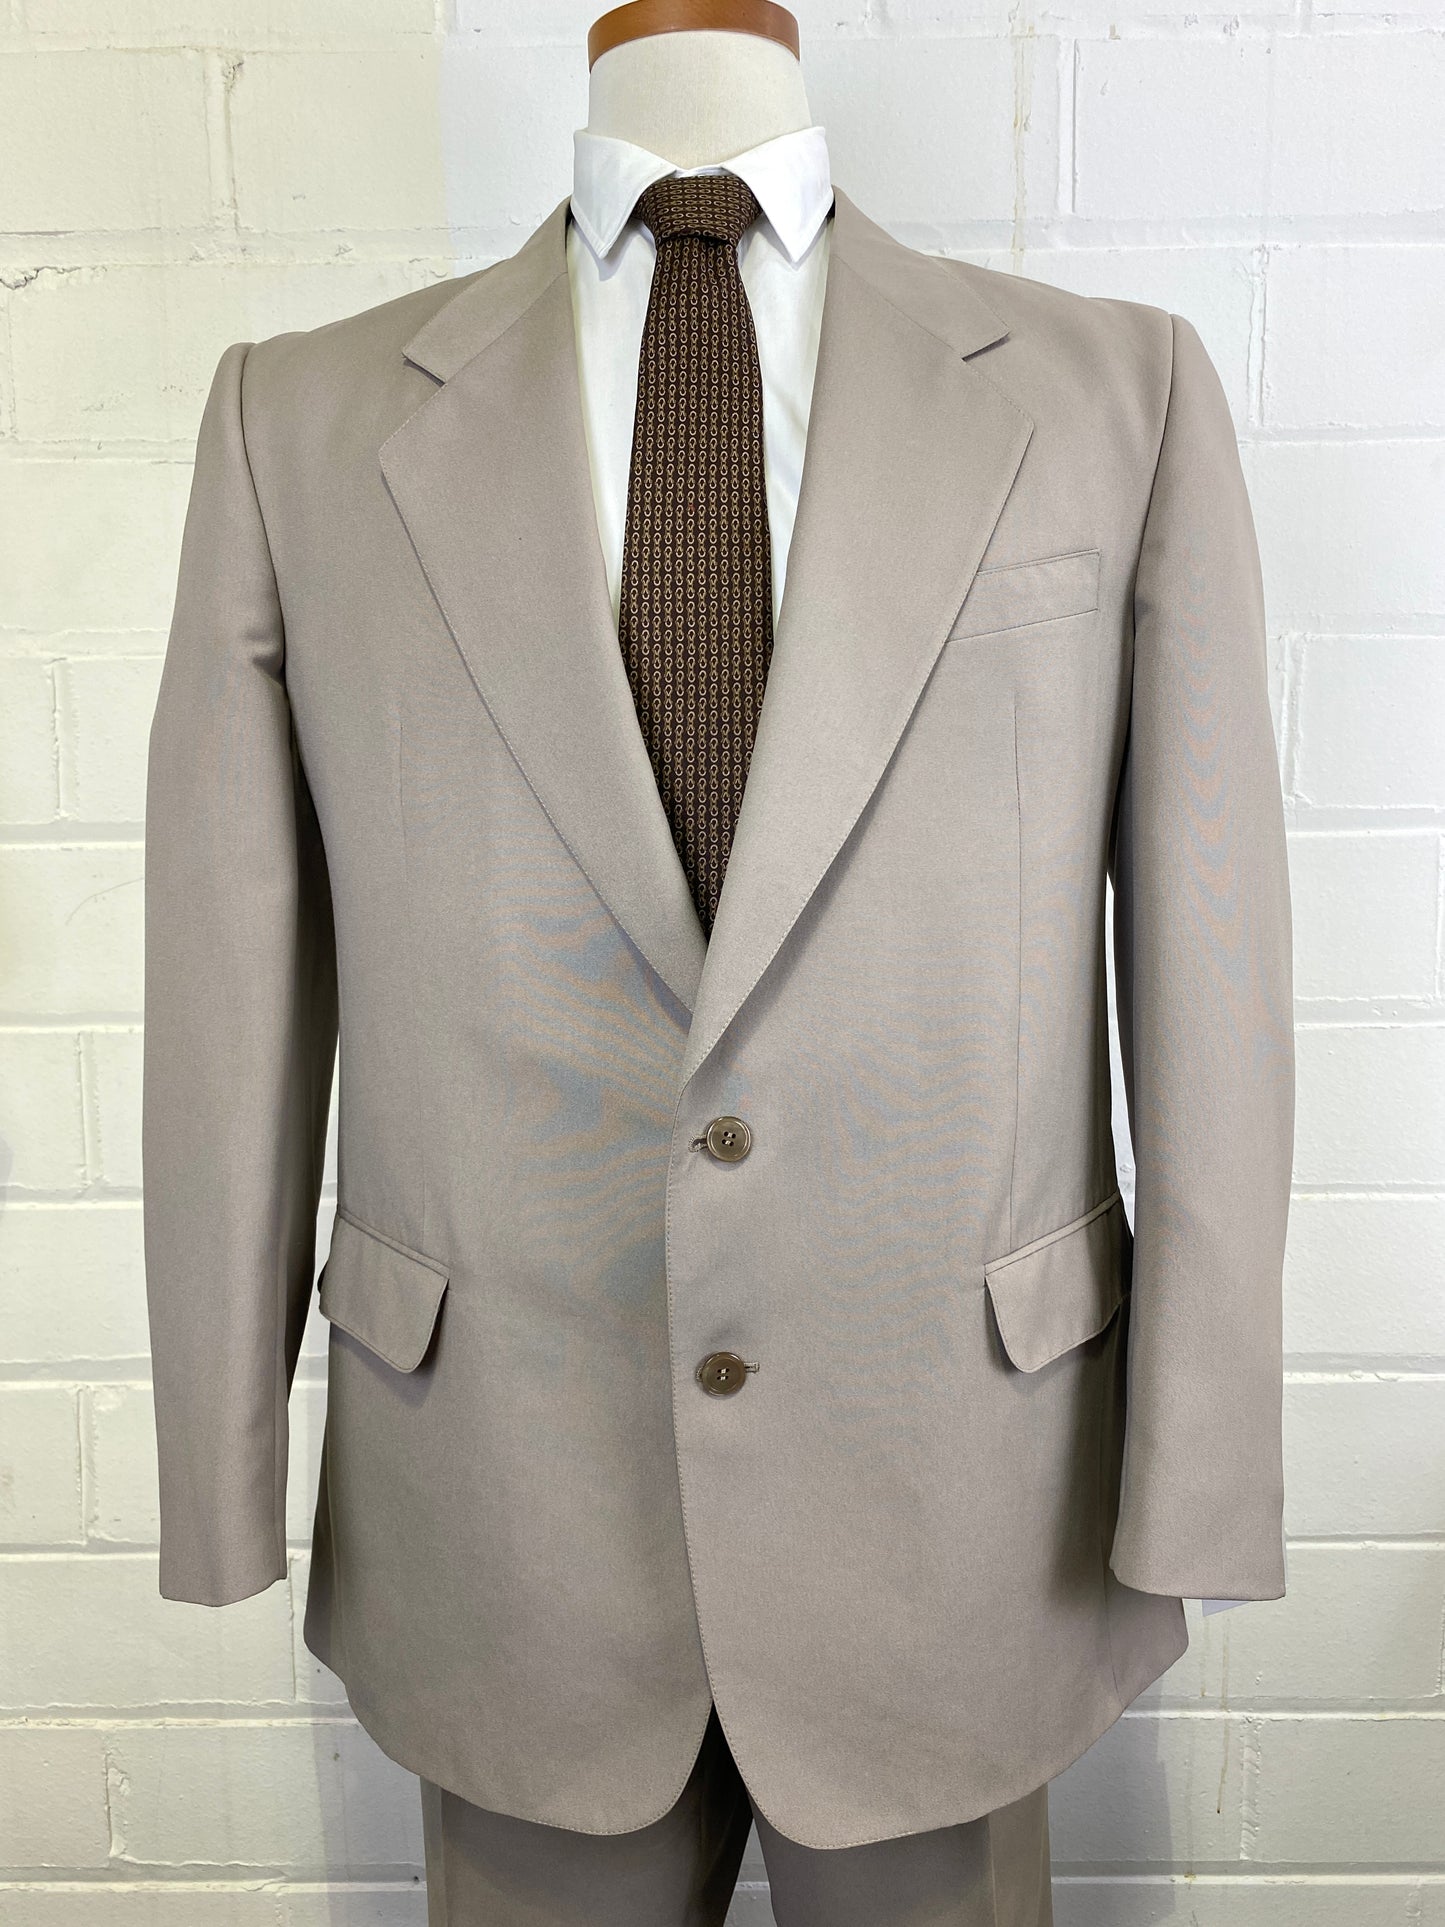 2000s Men's 2-Piece Solid Taupe Suit, Hudson Room, C44T